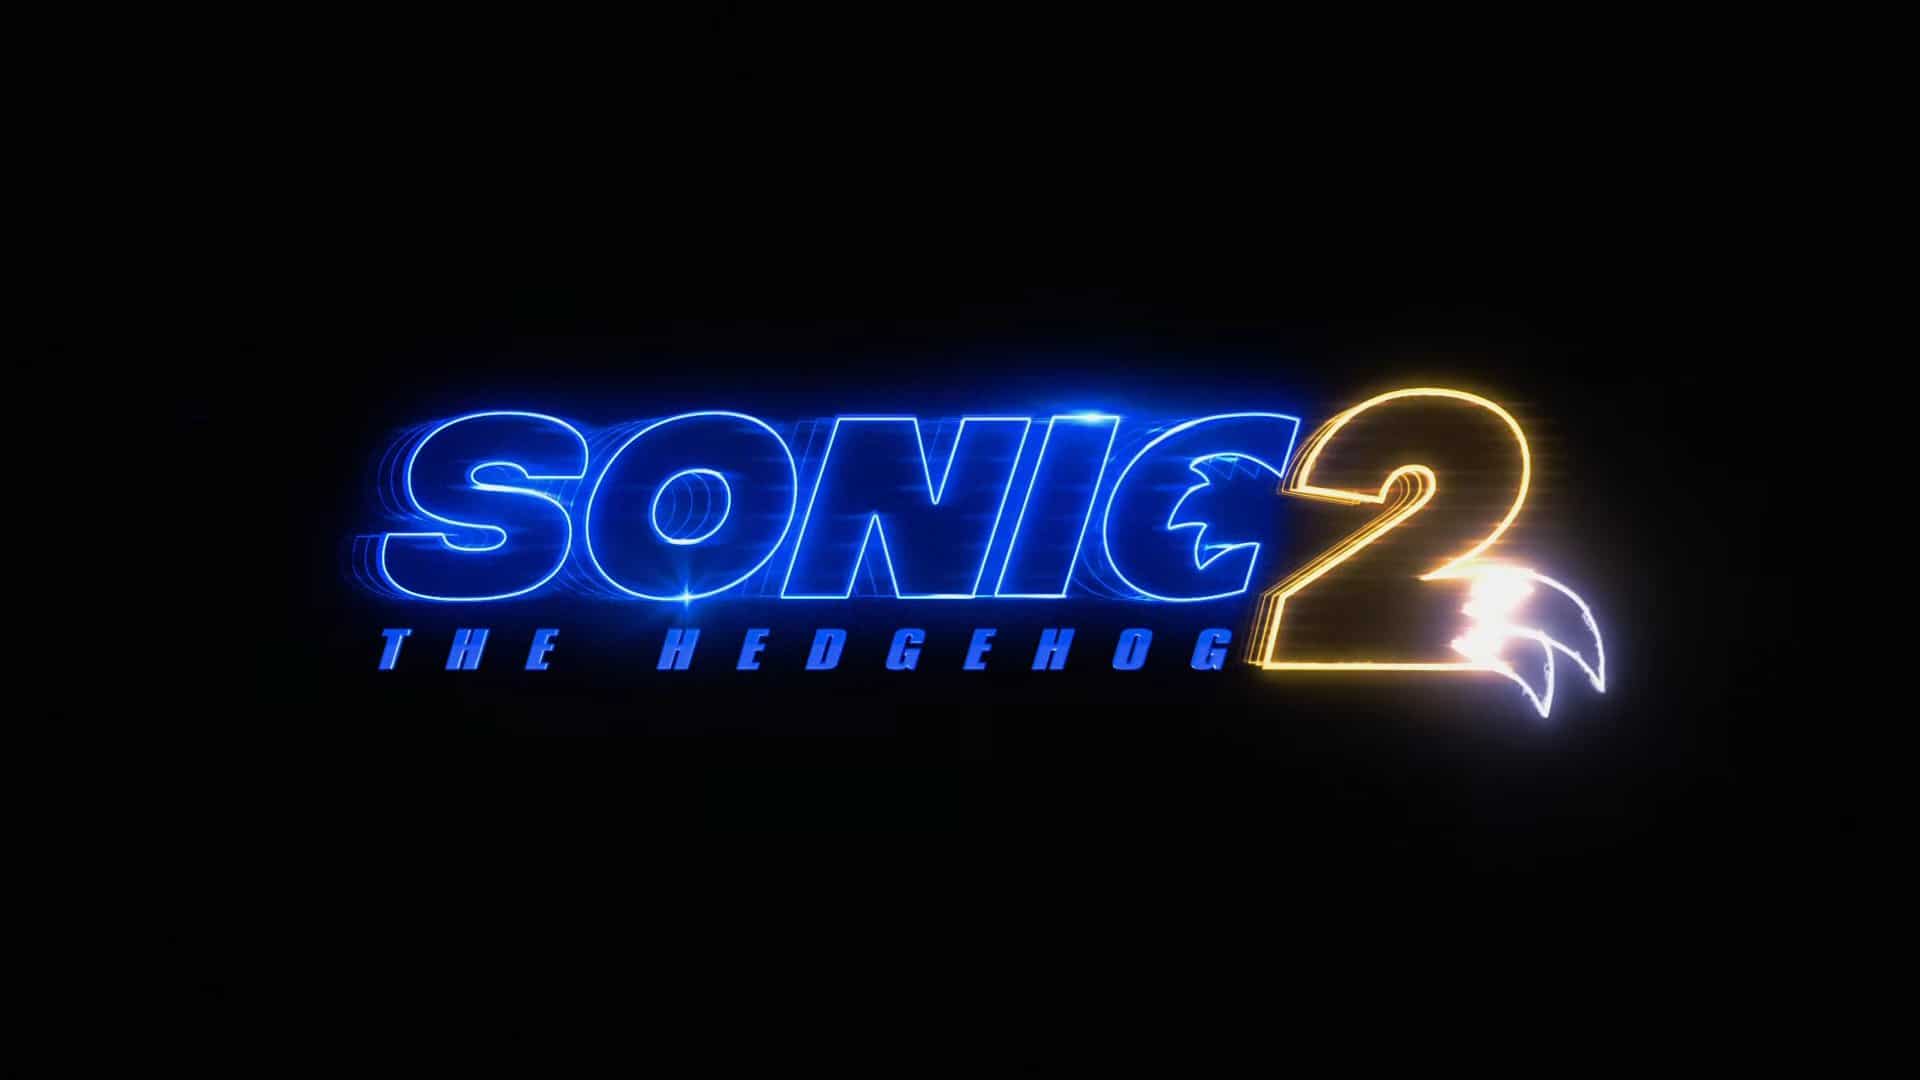 Anunciada oficialmente la película Sonic the Hedgehog 2 con este teaser